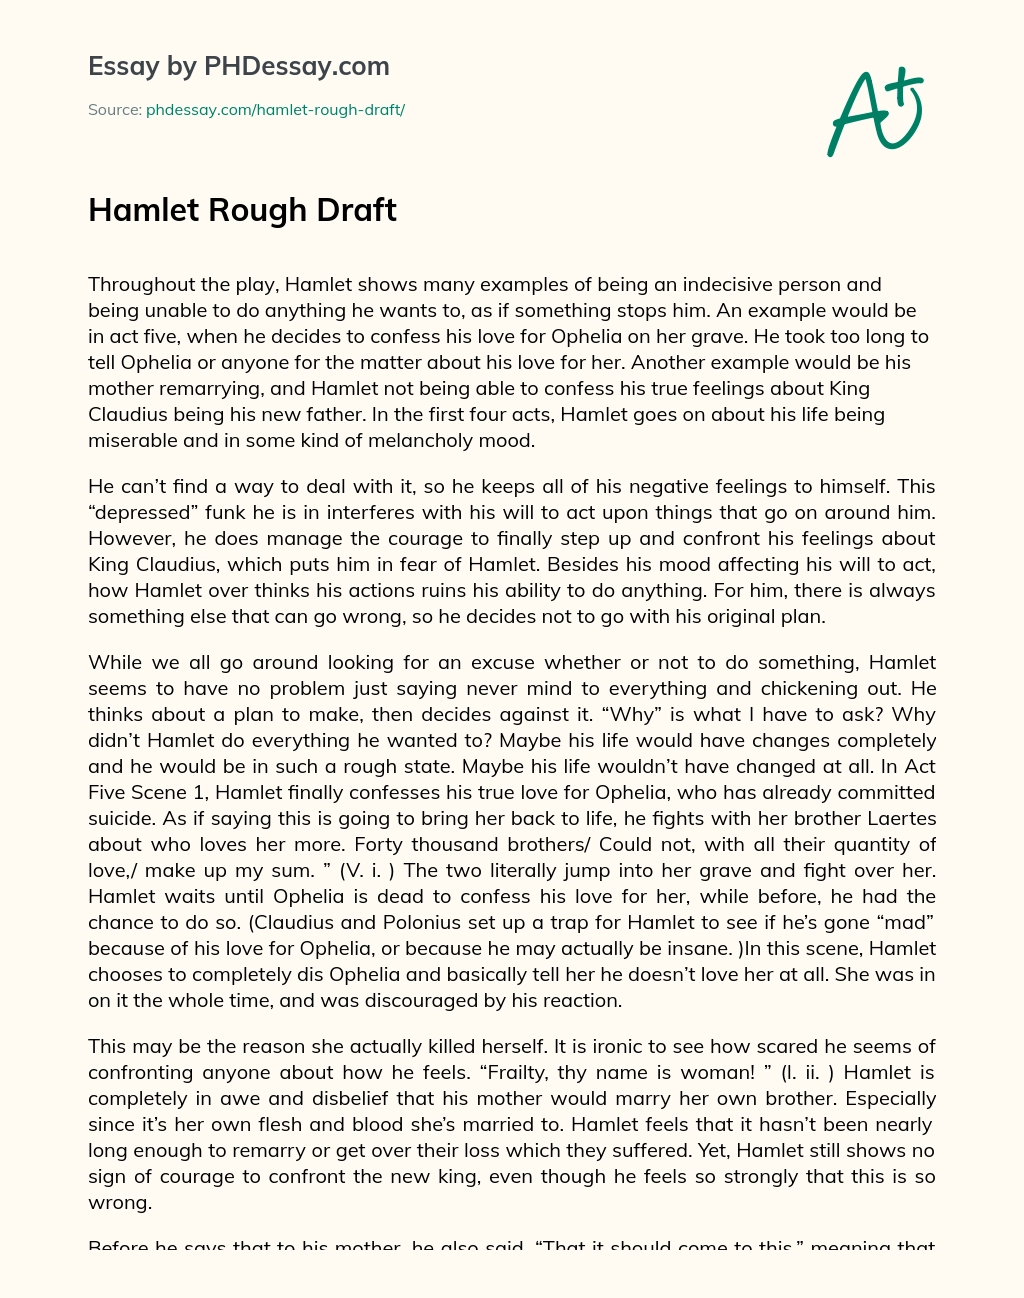 Hamlet Rough Draft essay